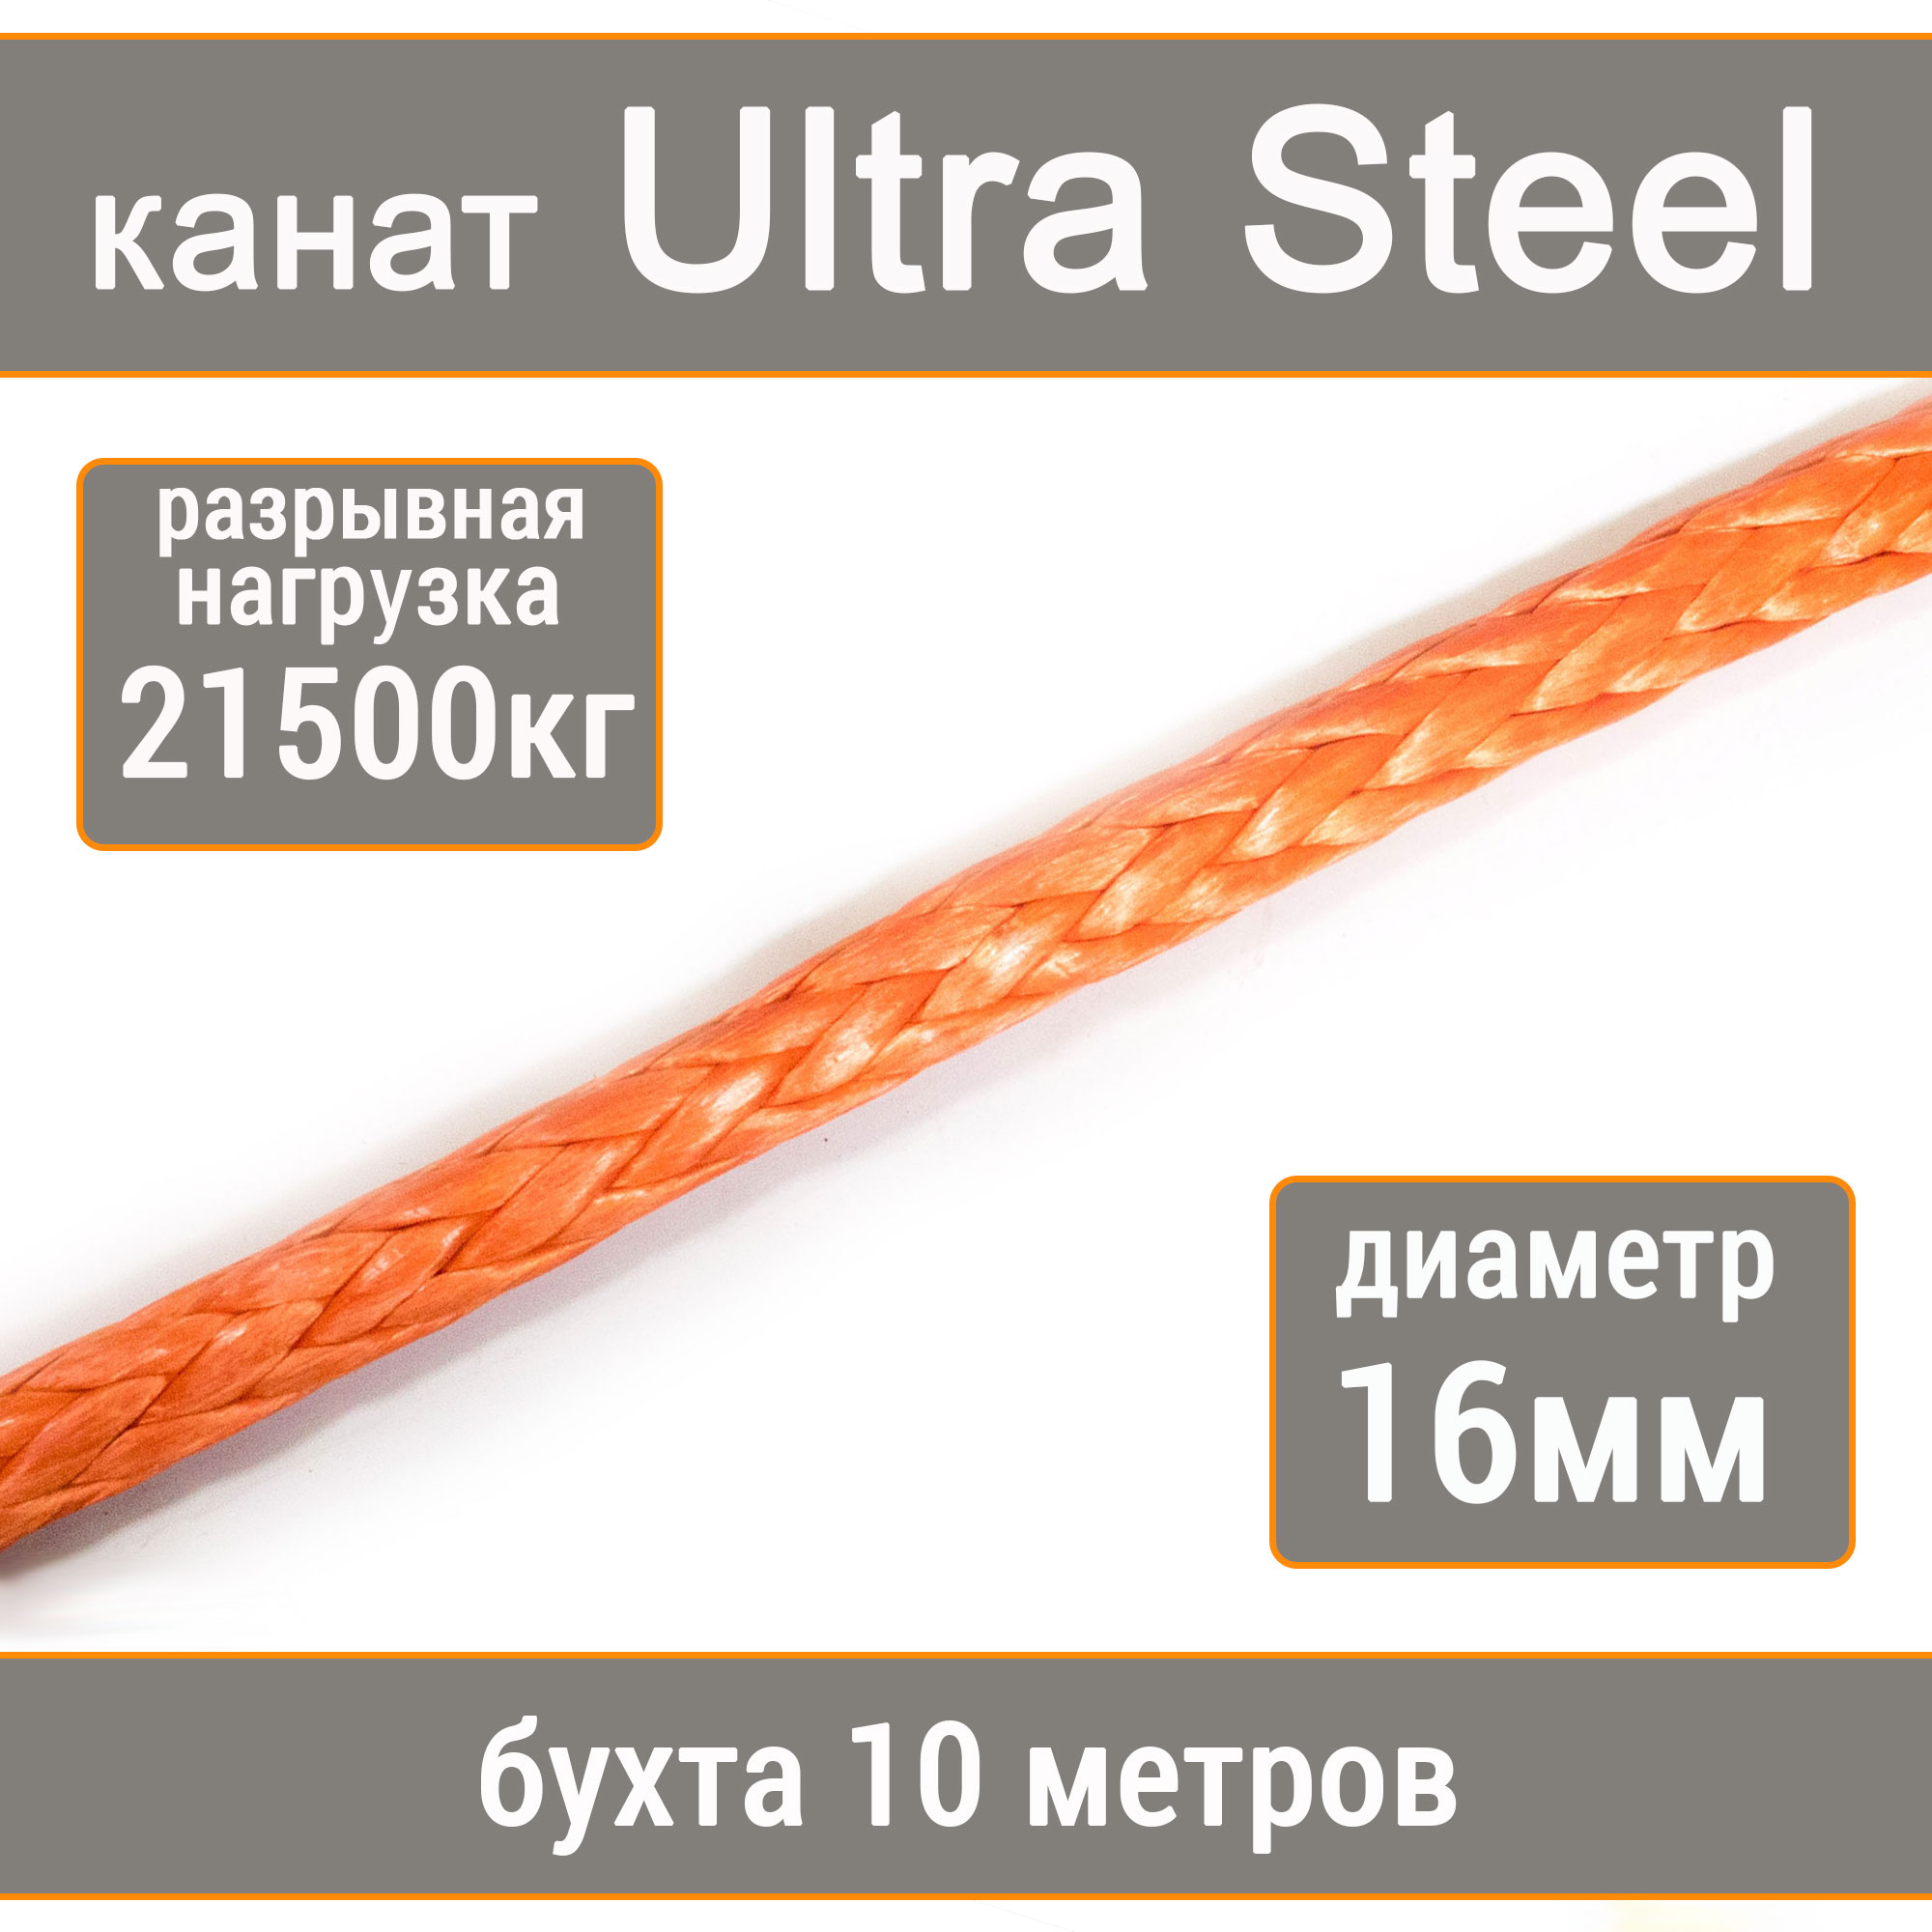 Высокопрочный синтетический канат UTX Ultra Steel 16мм р.н.21500кг, 007654321-1016